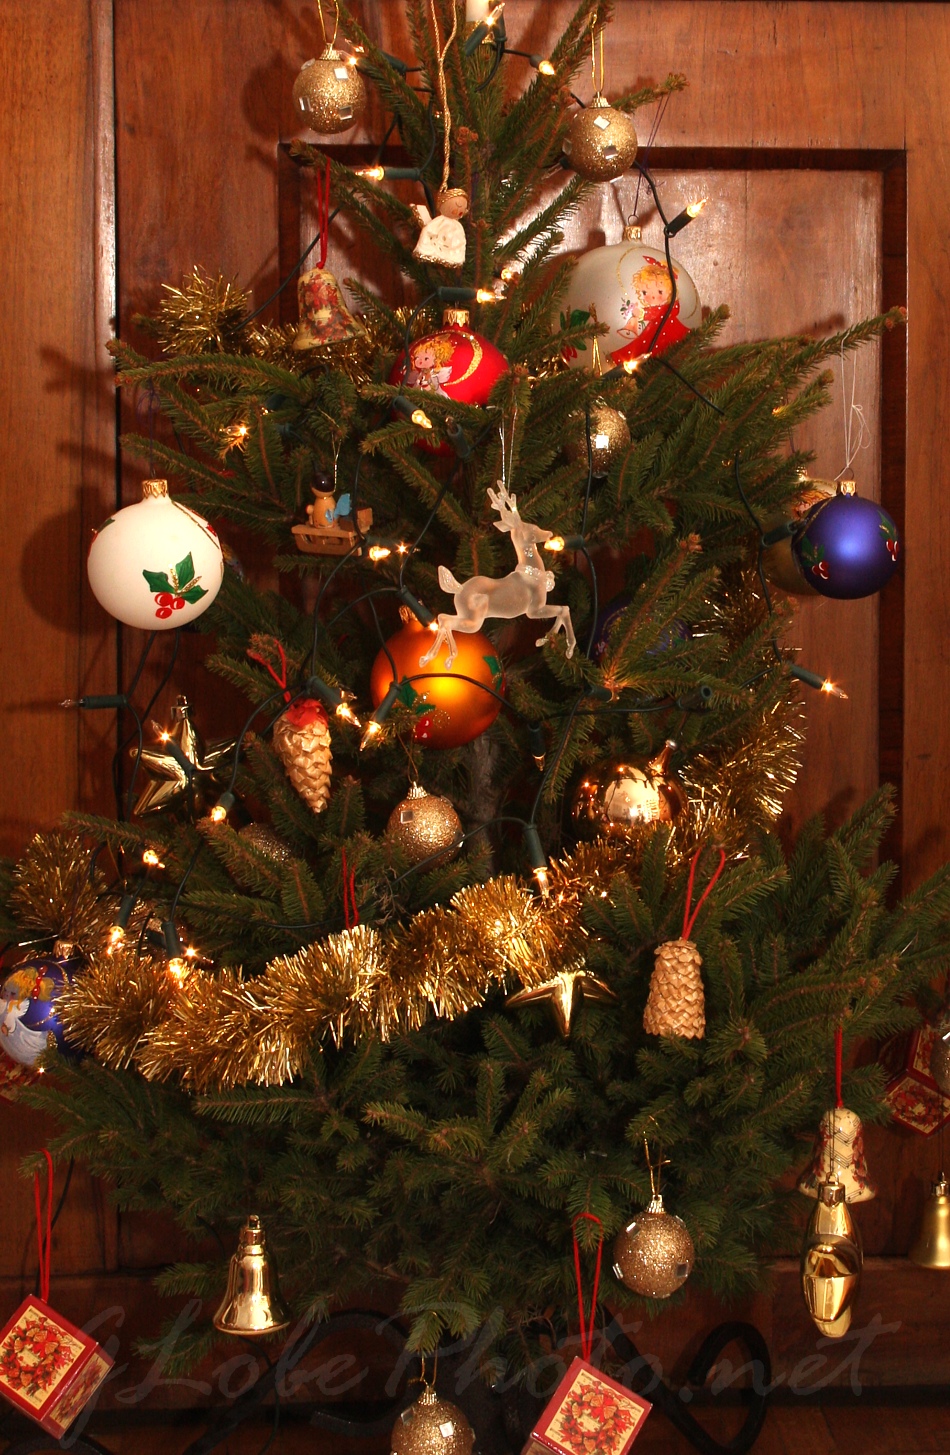 Karcsony - 2011 - Christmas